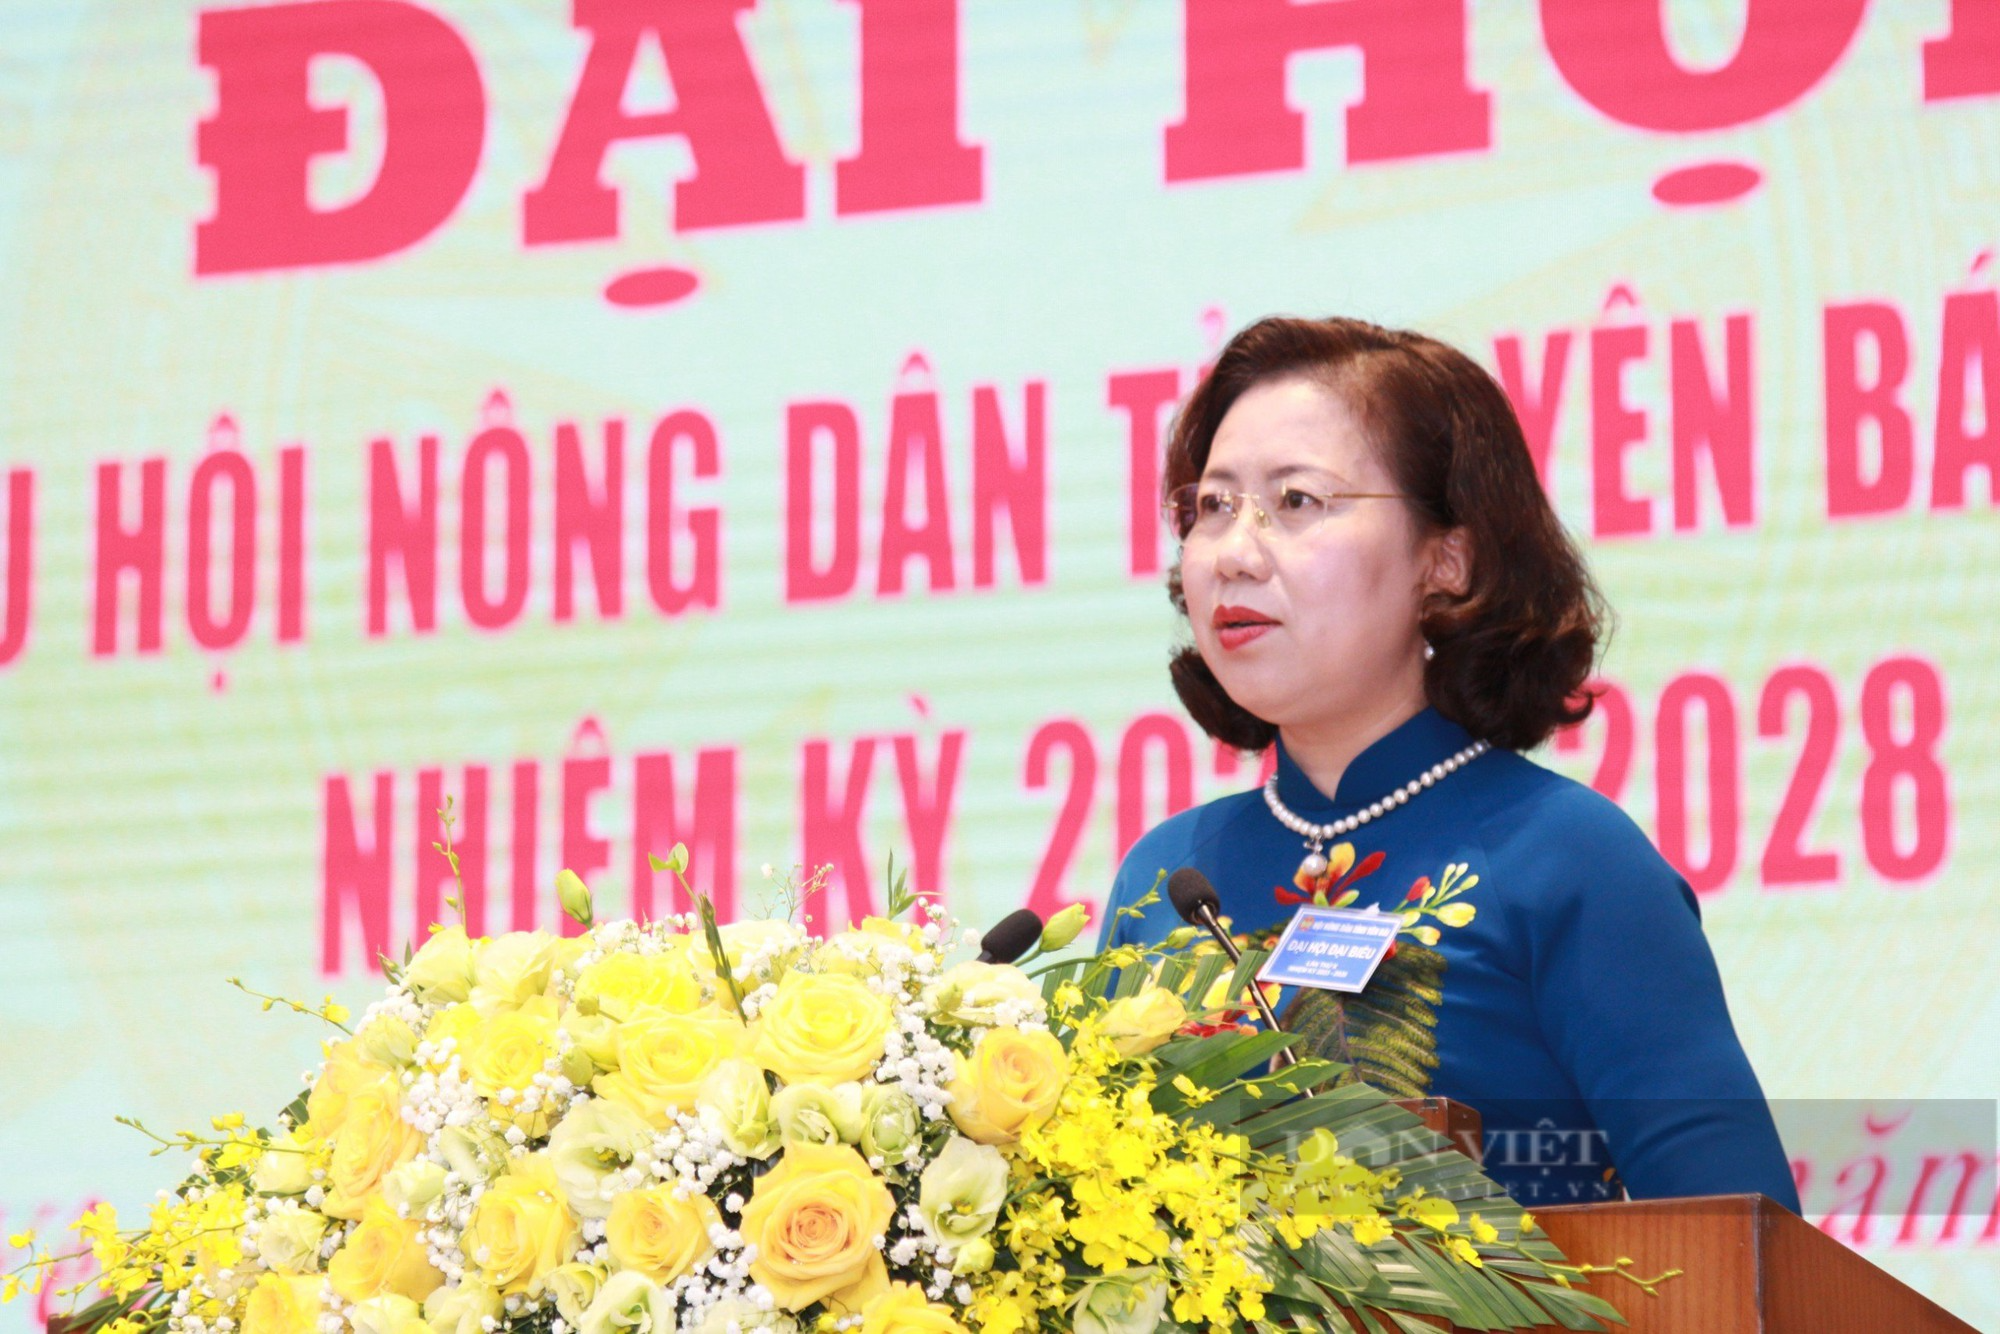 Phó Chủ tịch Hội NDVN Bùi Thị Thơm: Hội Nông dân tỉnh Yên Bái vận động hội viên phát huy bản sắc dân tộc - Ảnh 3.